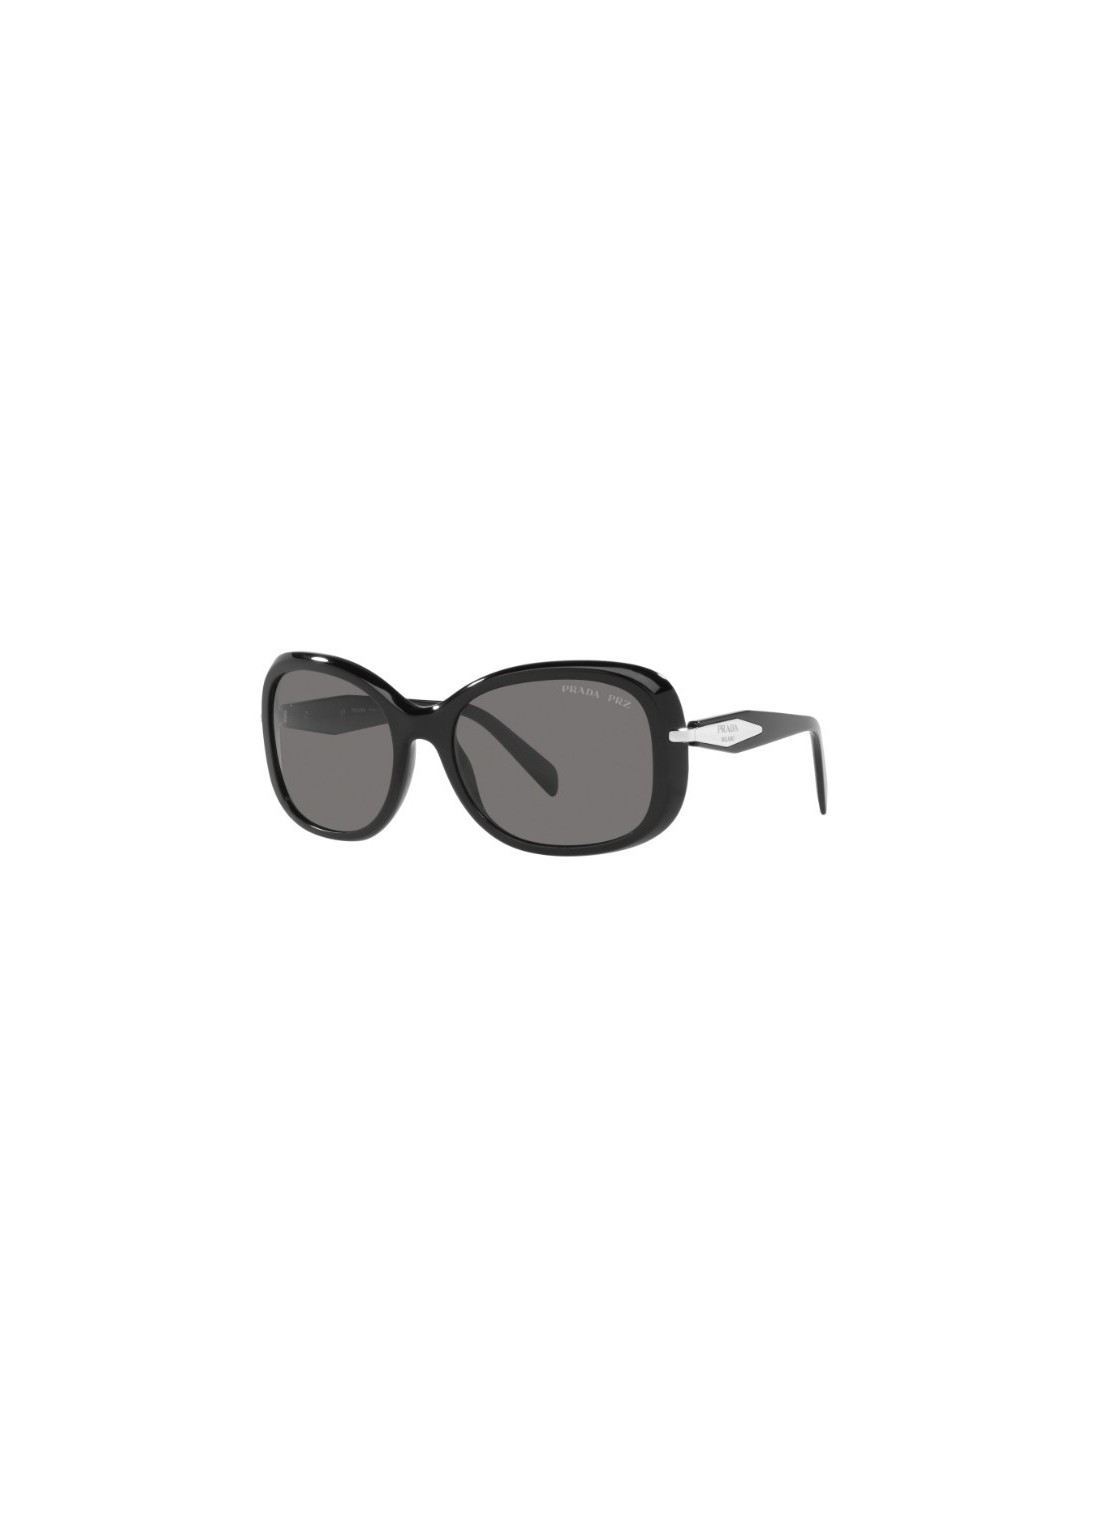 Gafas prada sunglasses woman 0pr04zs 0pr04zs 1ab5z1 talla transparente
 